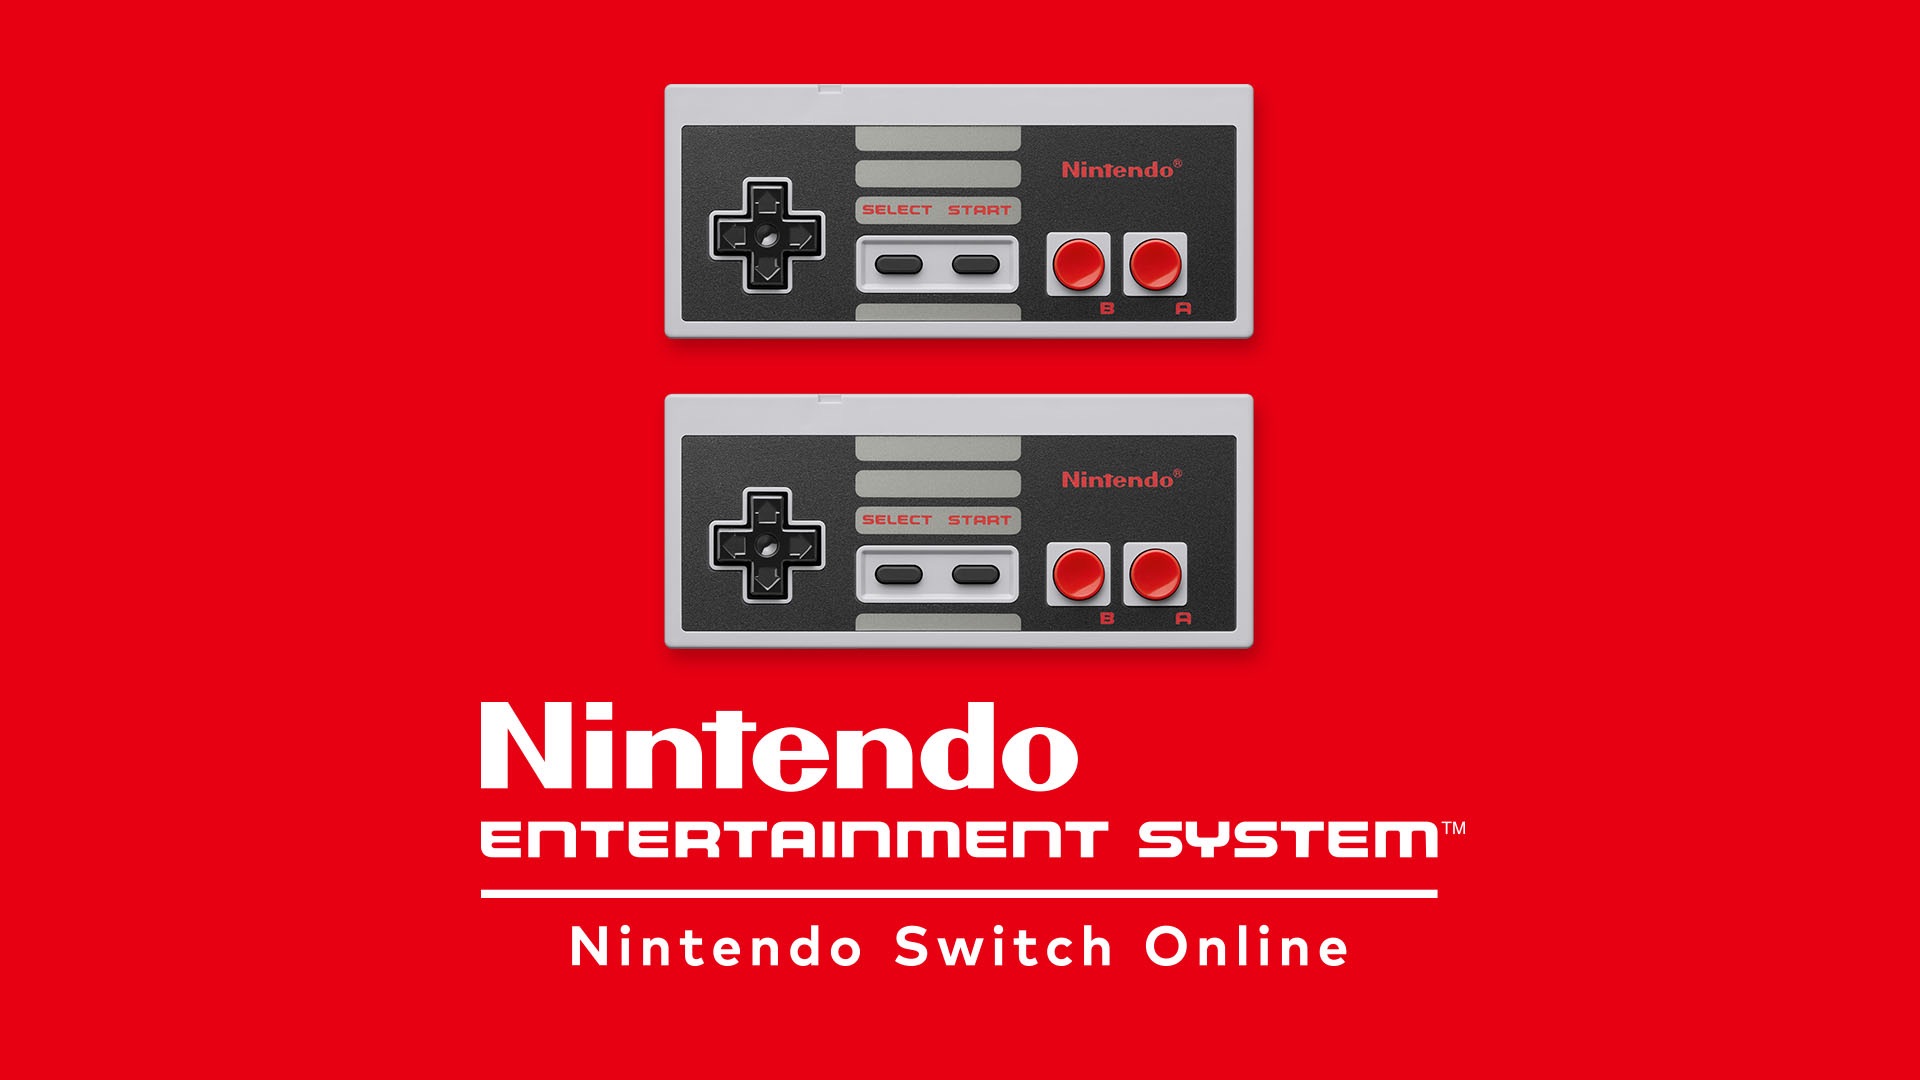 任天堂 Nintendo Entertainment System - Nintendo Switch Online for Nintendo Switch